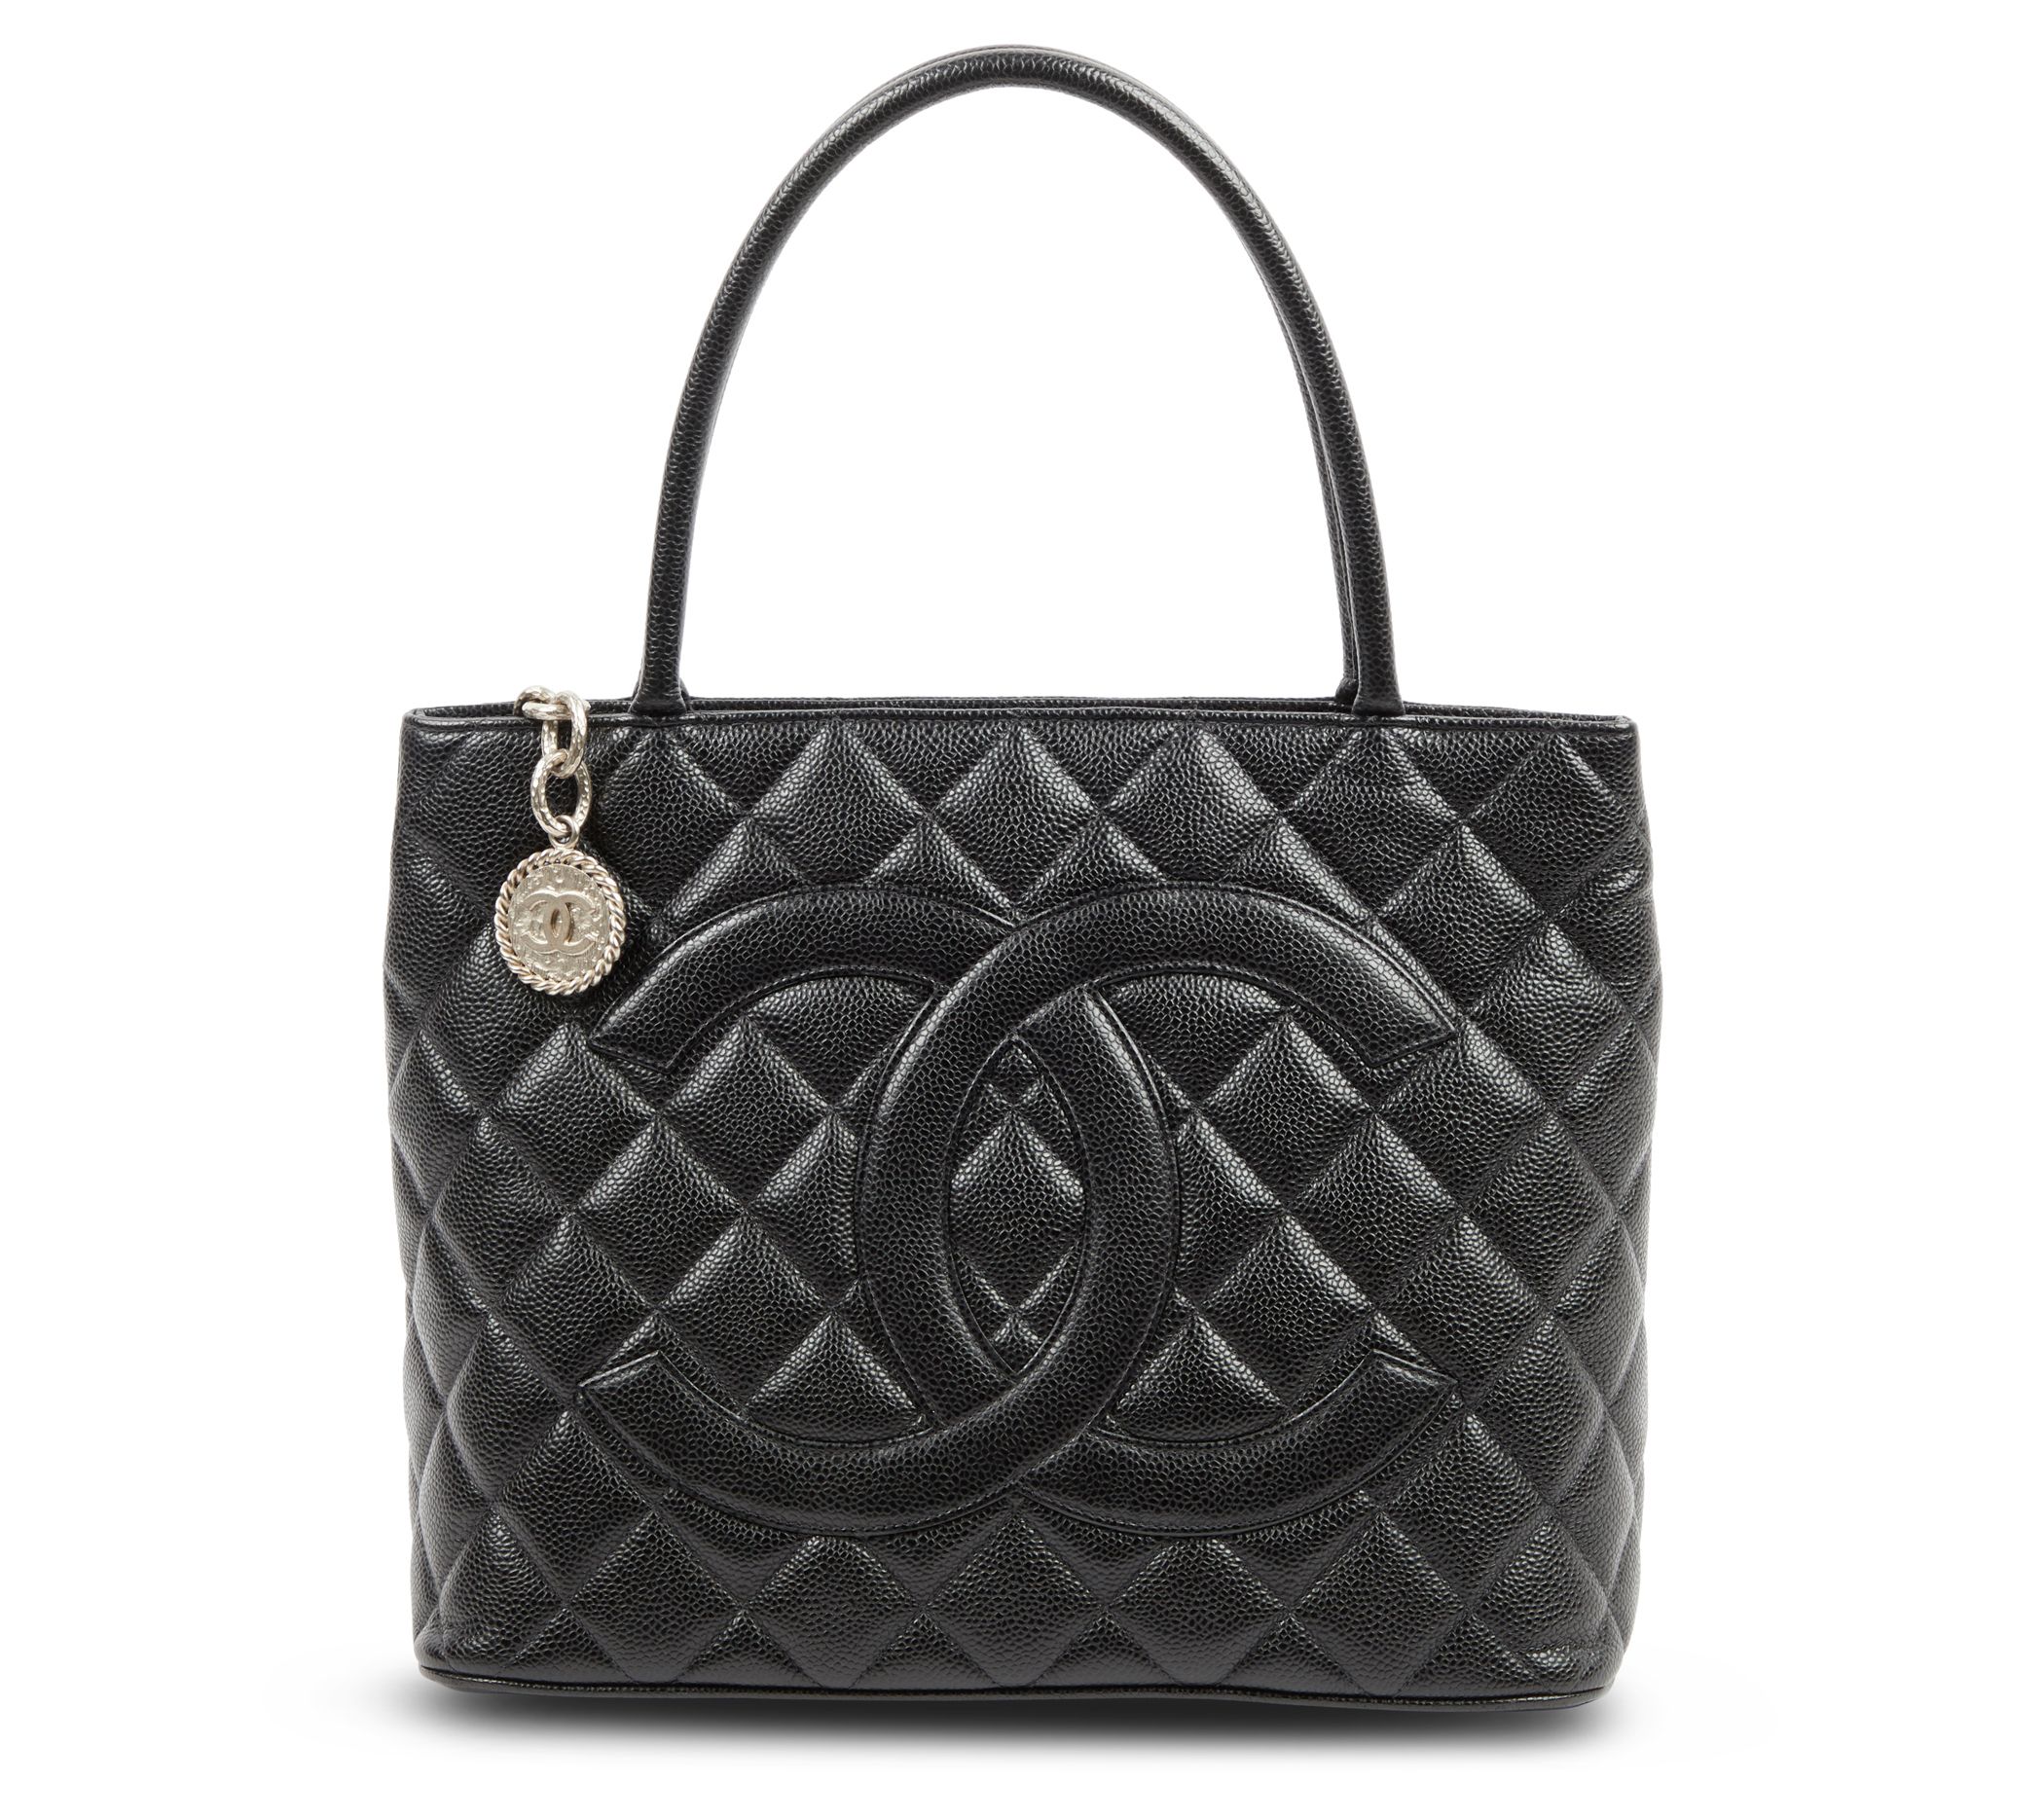 Chanel Chanel Bubble Bag Grey Quilted Velvet Shoulder Bag -Limited Ed